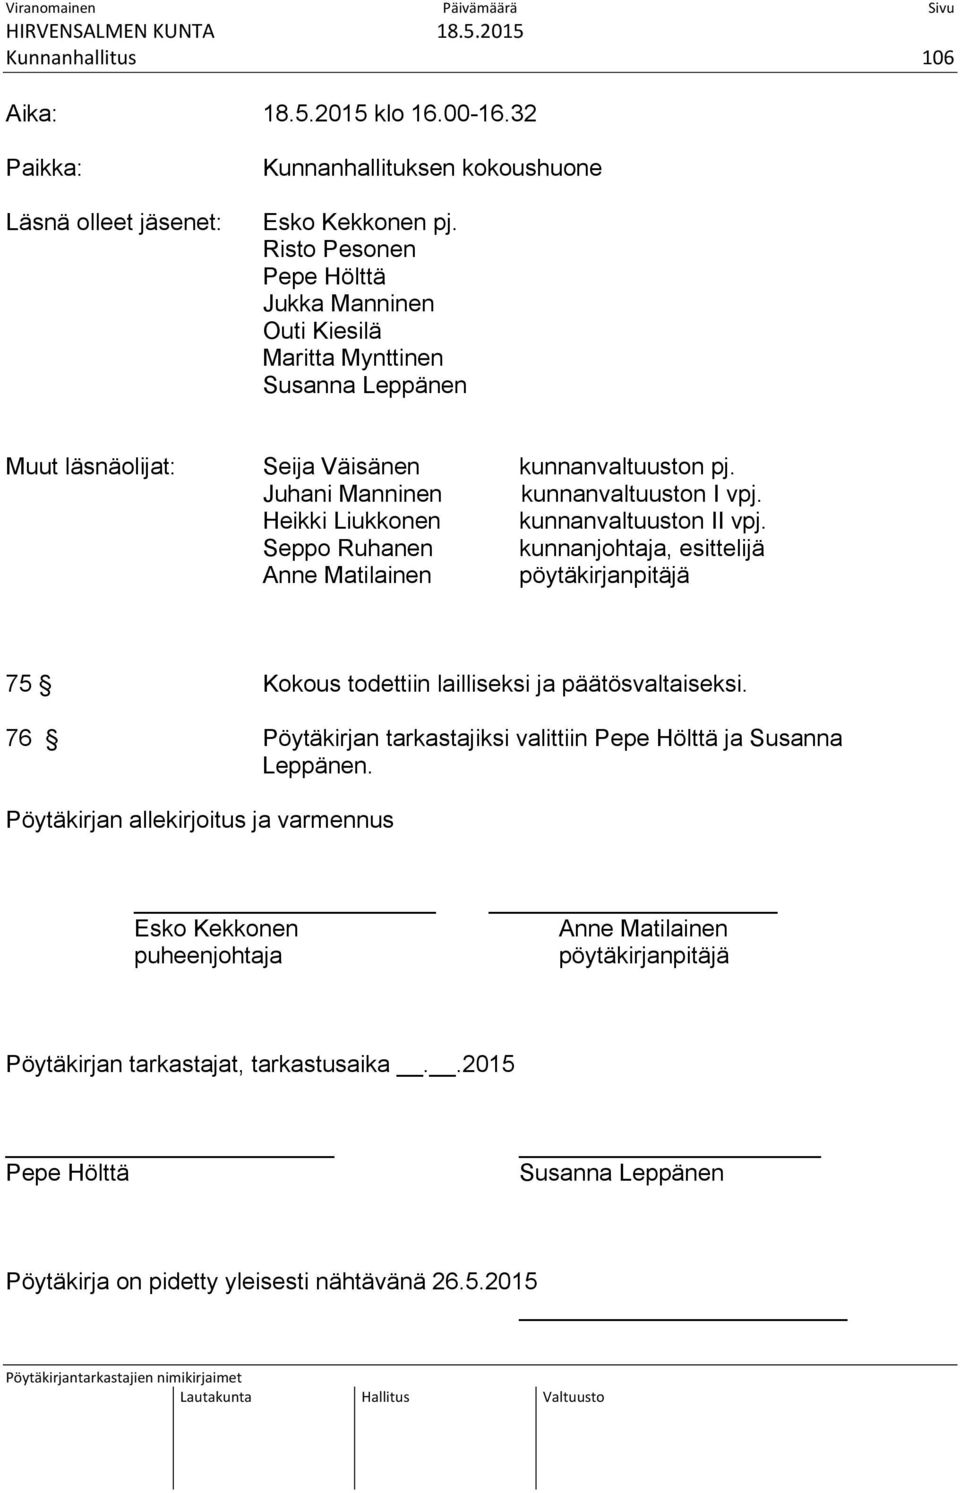 Heikki Liukkonen kunnanvaltuuston II vpj. Seppo Ruhanen kunnanjohtaja, esittelijä Anne Matilainen pöytäkirjanpitäjä 75 Kokous todettiin lailliseksi ja päätösvaltaiseksi.